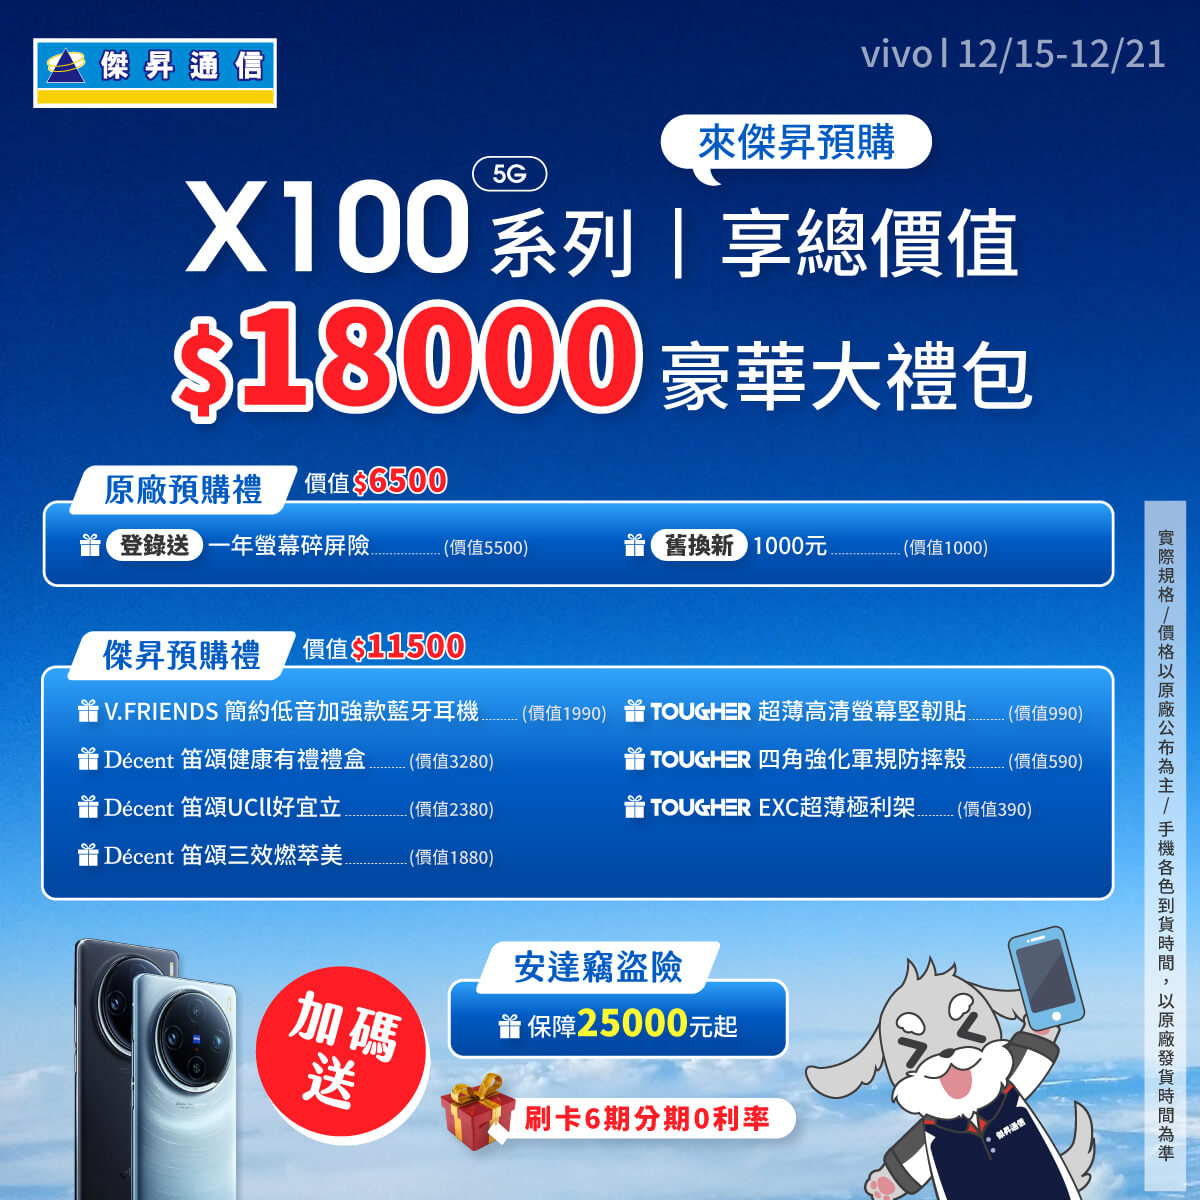 【新機預購】vivo X100、X100 Pro｜來傑昇預購送總價值18000元豪華大禮包+竊盜險